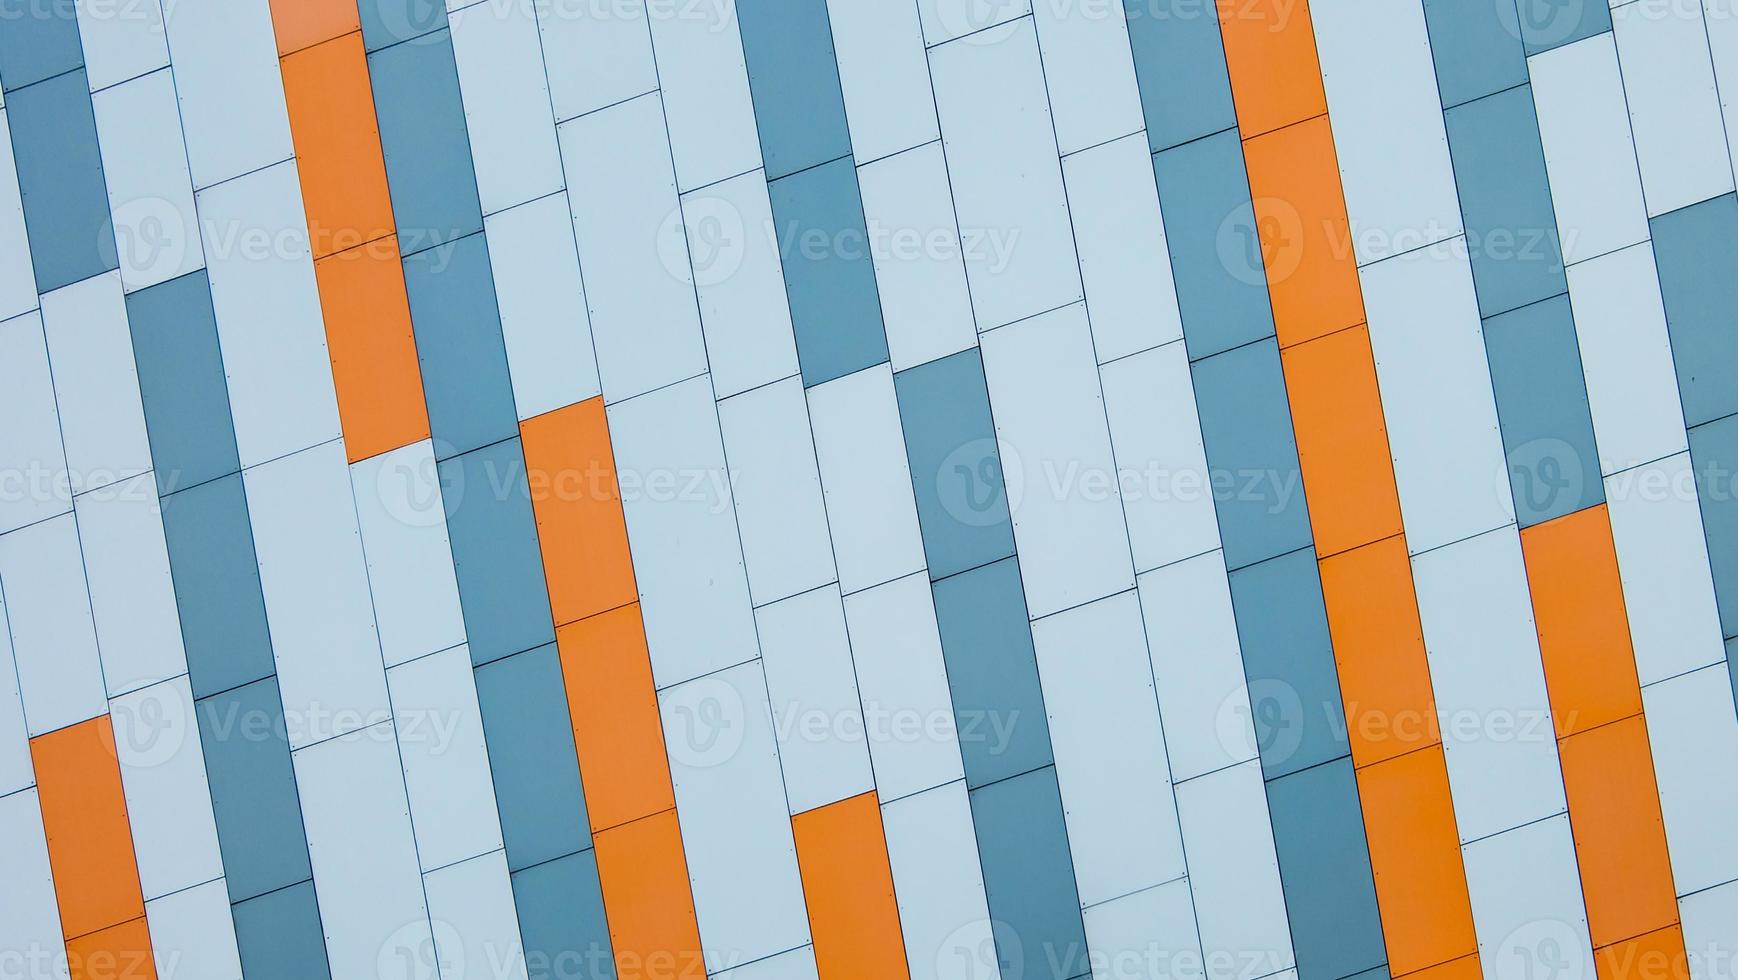 fachada do edifício moderno confrontado com painéis coloridos de sanduíche laranja azul e cinza inclinados. fundo arquitetônico. foto